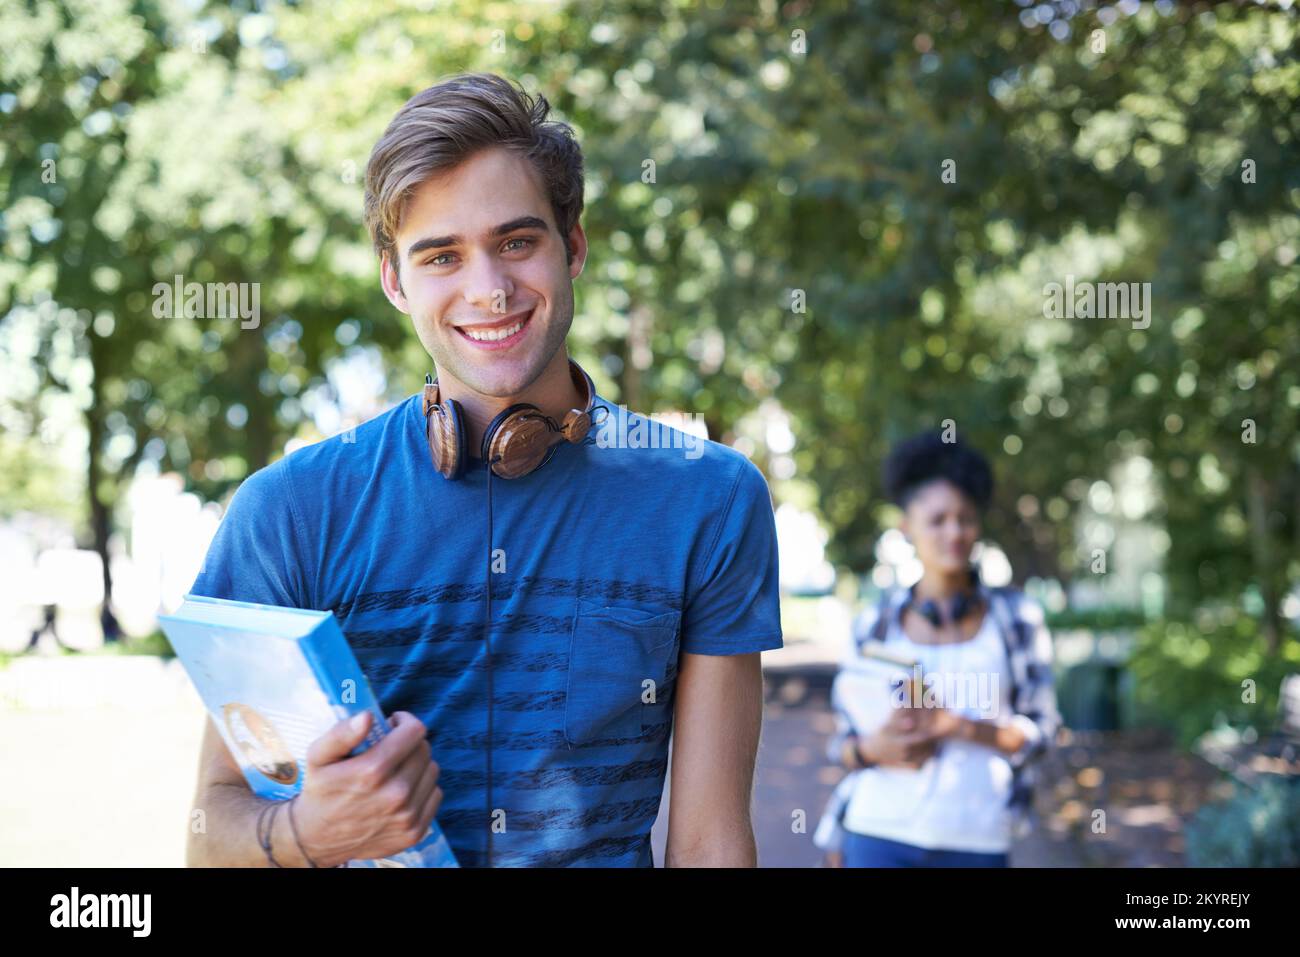 Amar la vida universitaria. Retrato de un estudiante de buena apariencia caminando en un parque con su material de estudio. Foto de stock